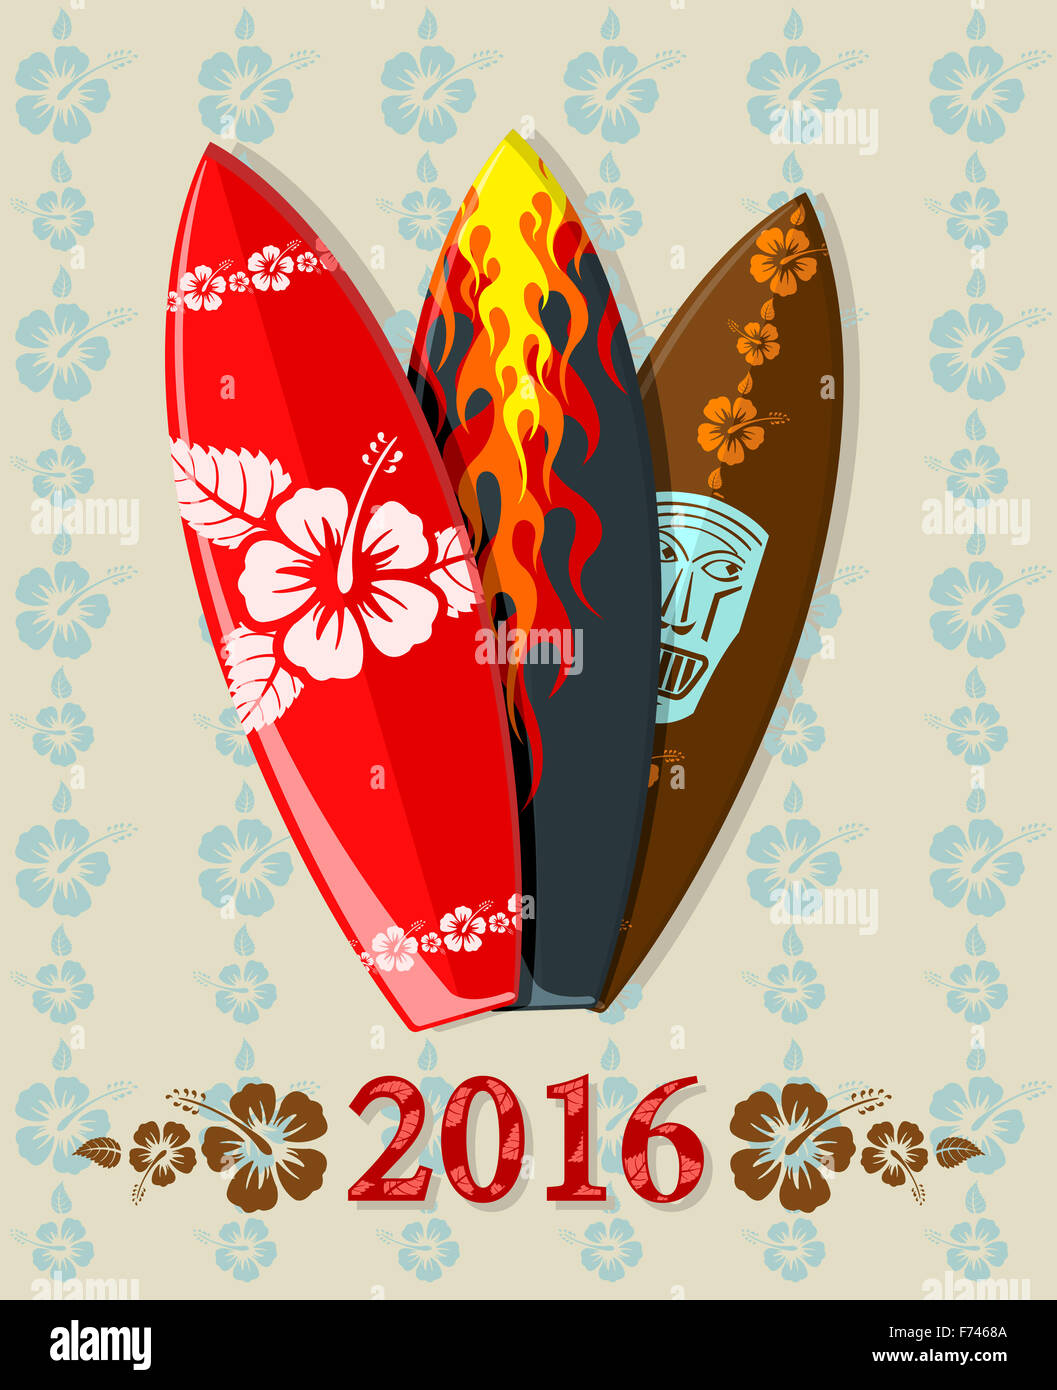 Illustrazione di aloha surf con testo 2016 Foto Stock